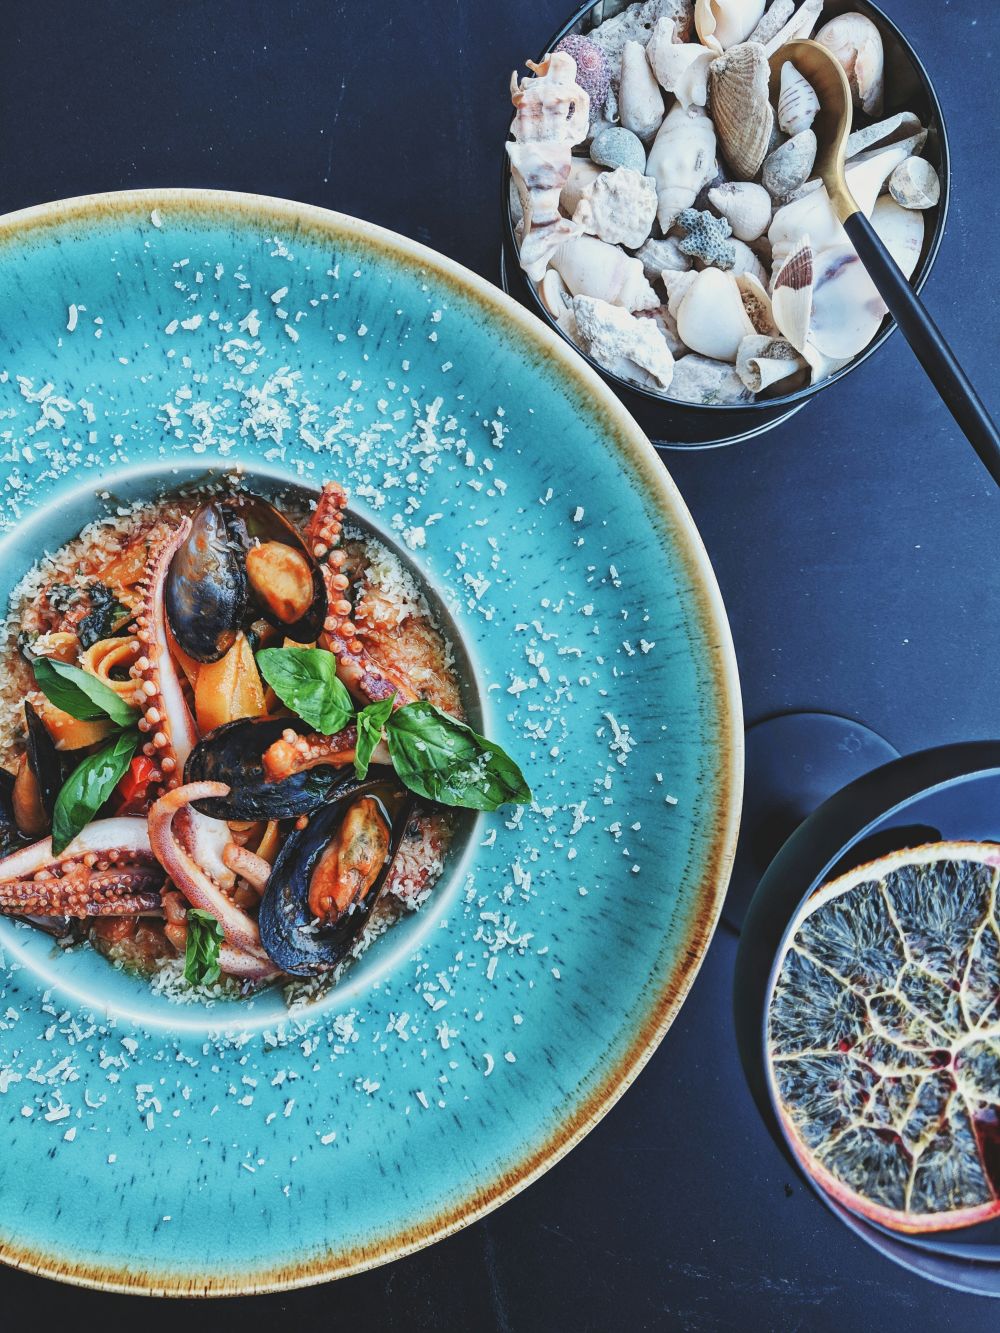 Opplev kulinariske skatter på en restaurant i Skjærhalden